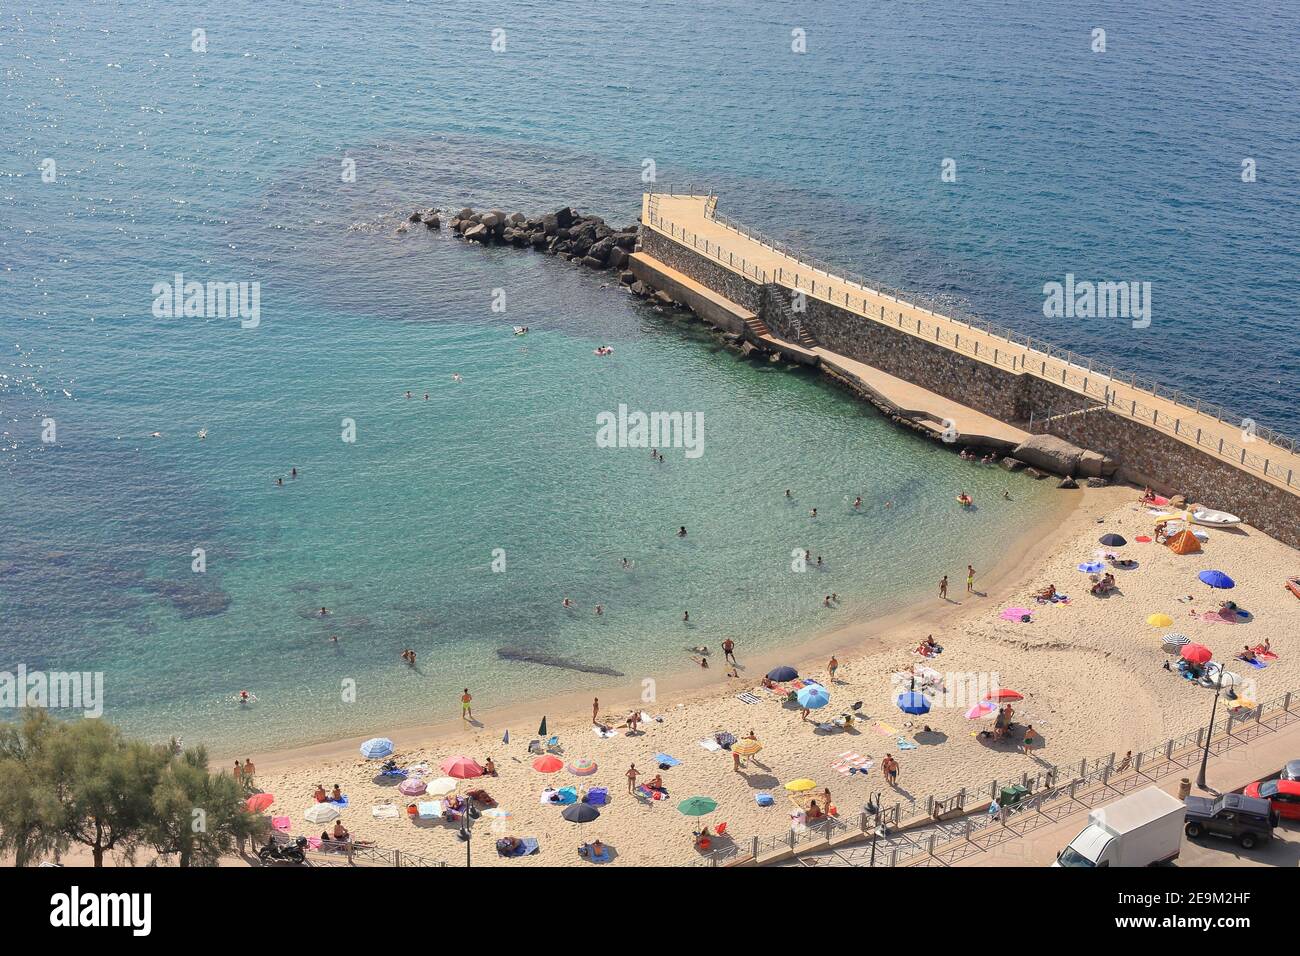 La plage publique de Pizzo sur la rive de la mer Tyrrhénienne, Vibo Valentia, Calabre, Italie Banque D'Images